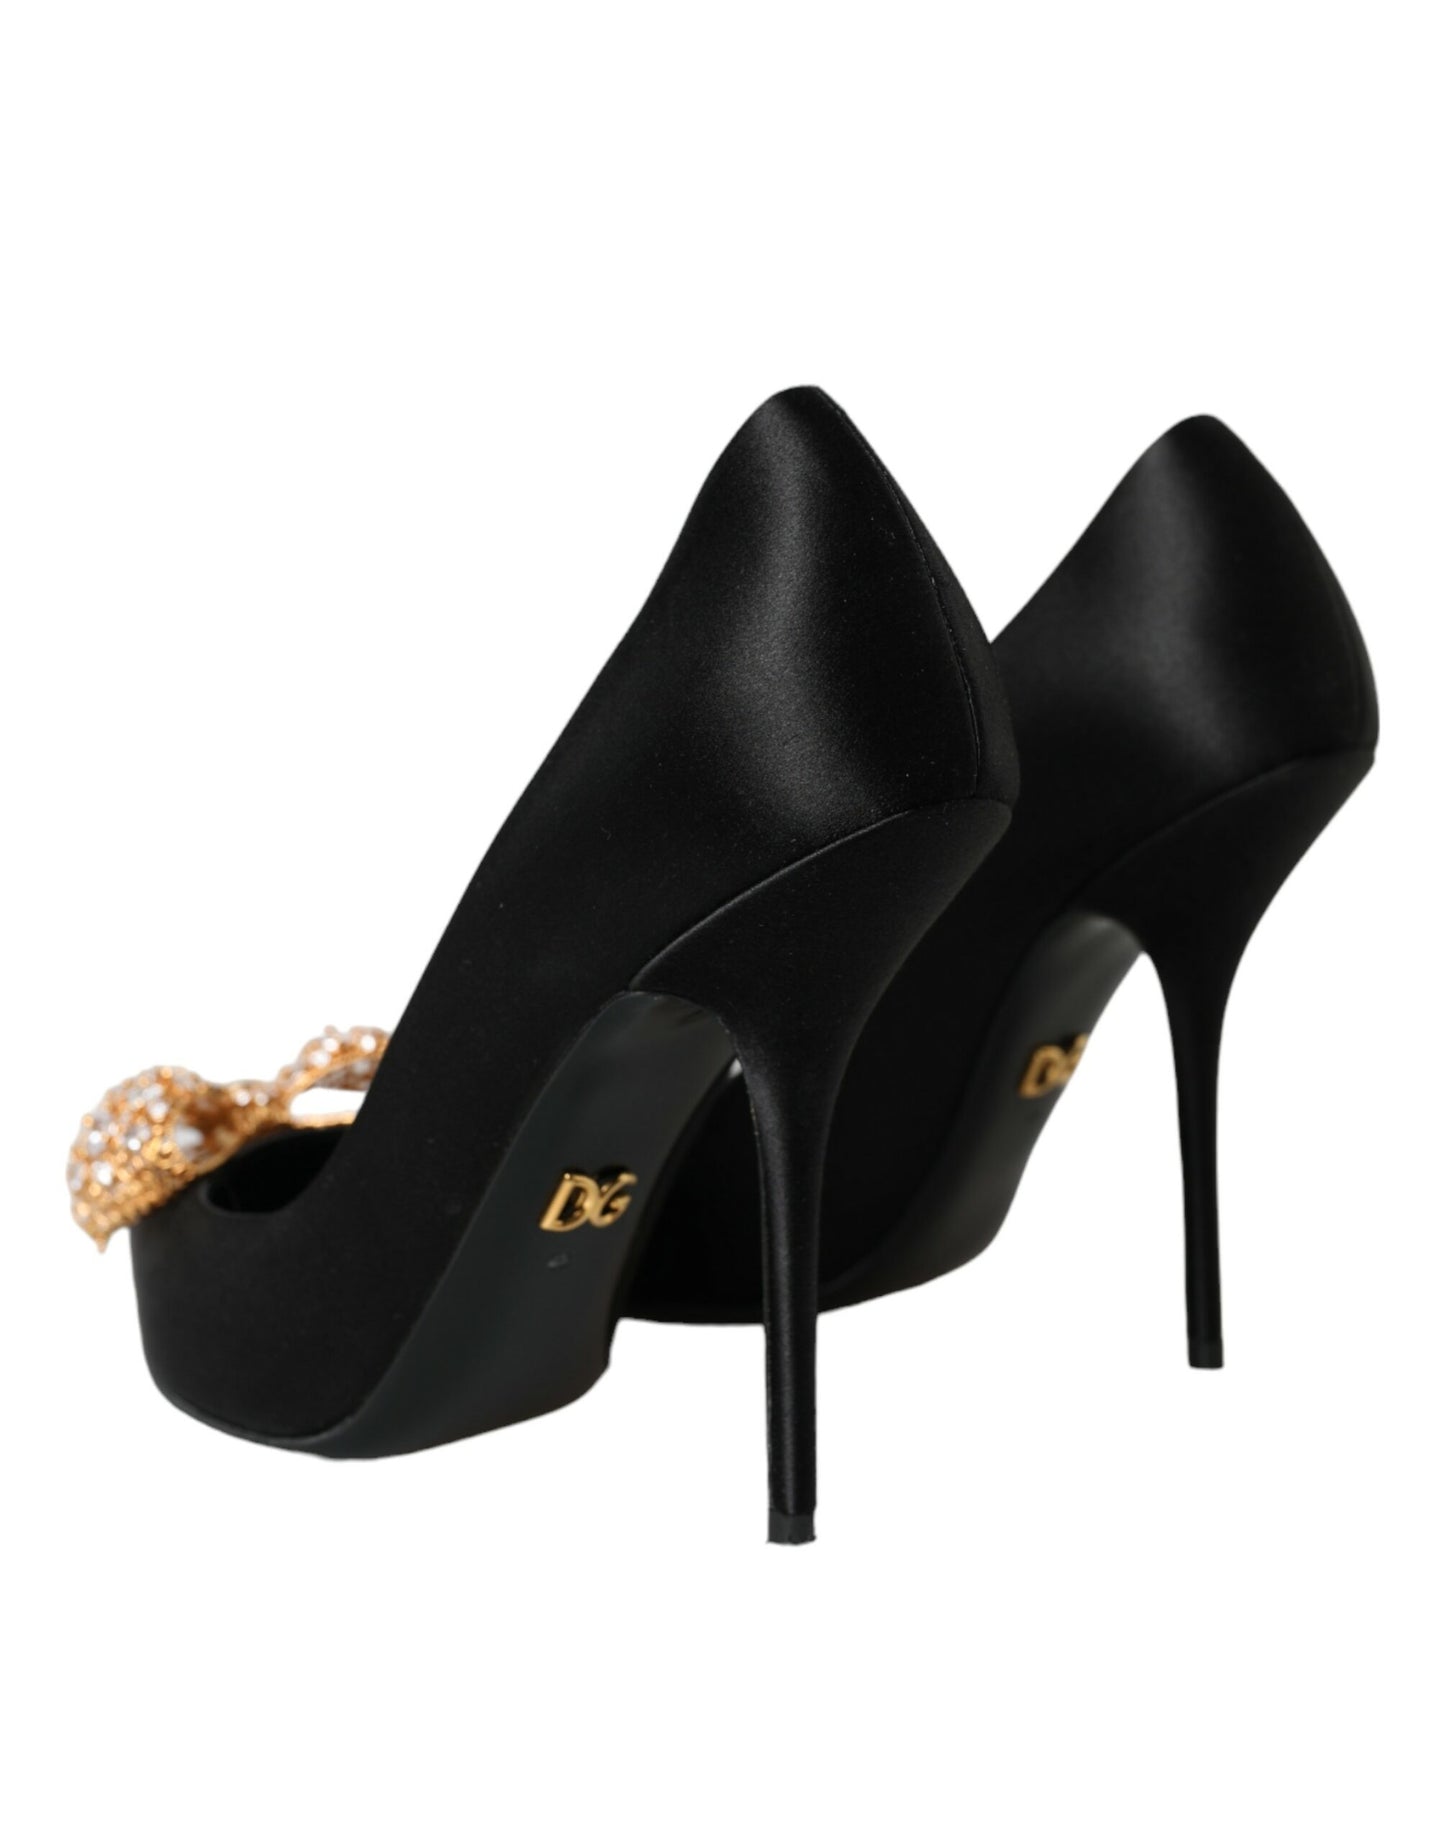 Black Satin Bow Embellished Heels Pumps Shoes